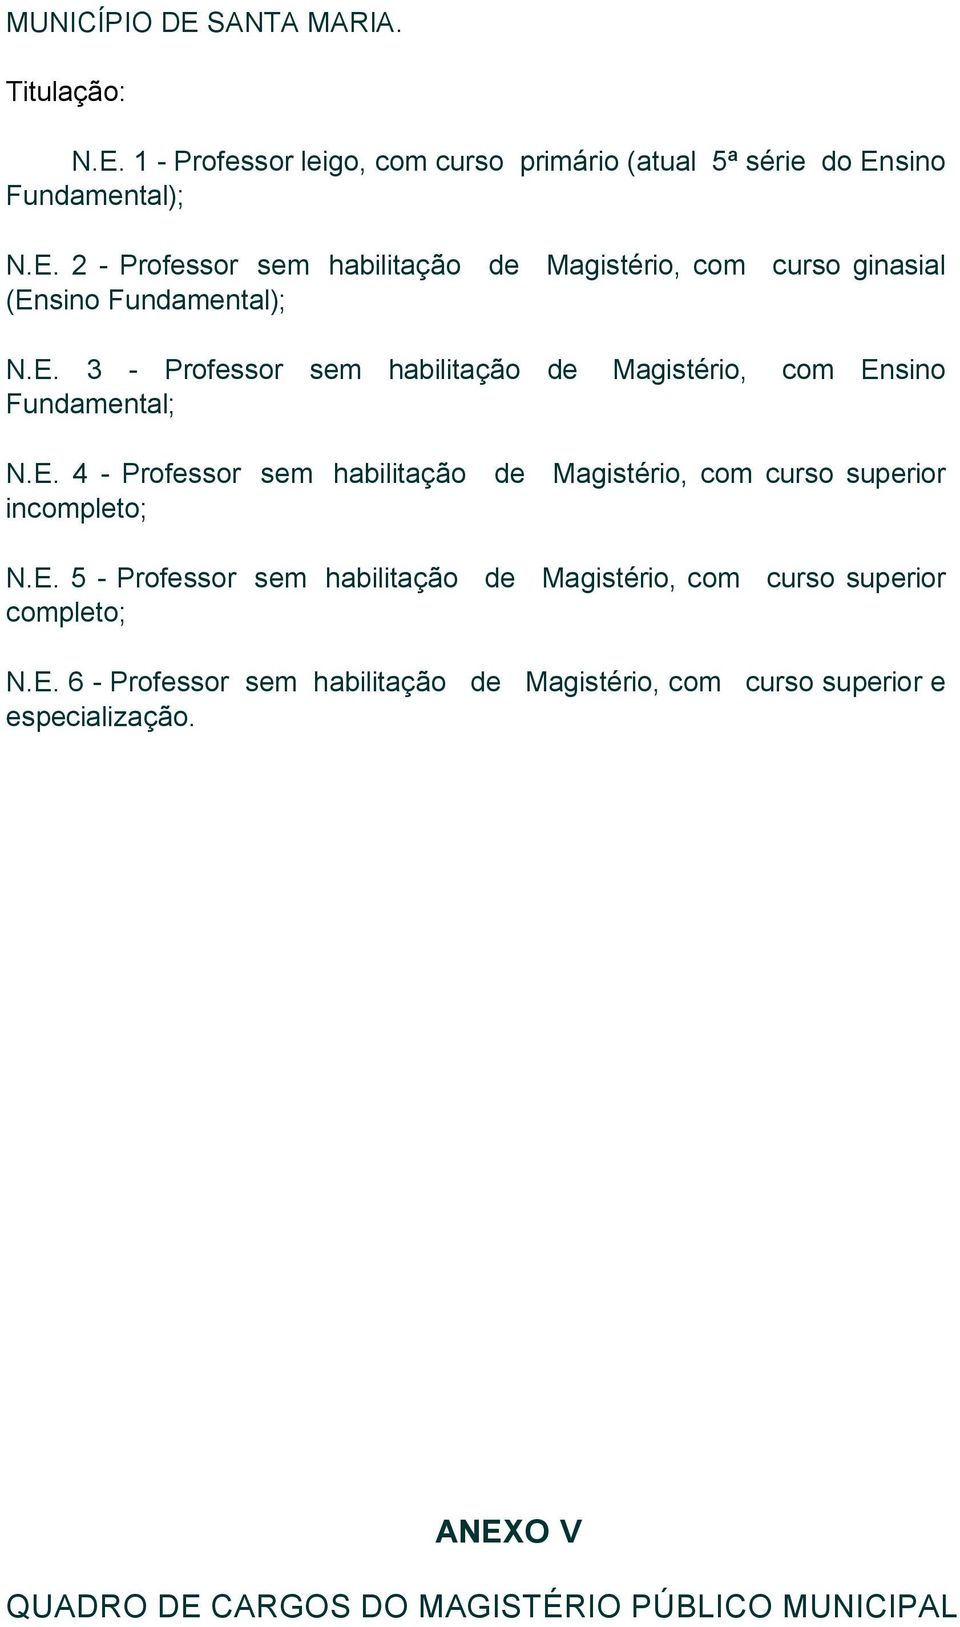 E. 5 - Professor sem habilitação de Magistério, com curso superior completo; N.E. 6 - Professor sem habilitação de Magistério, com curso superior e especialização.